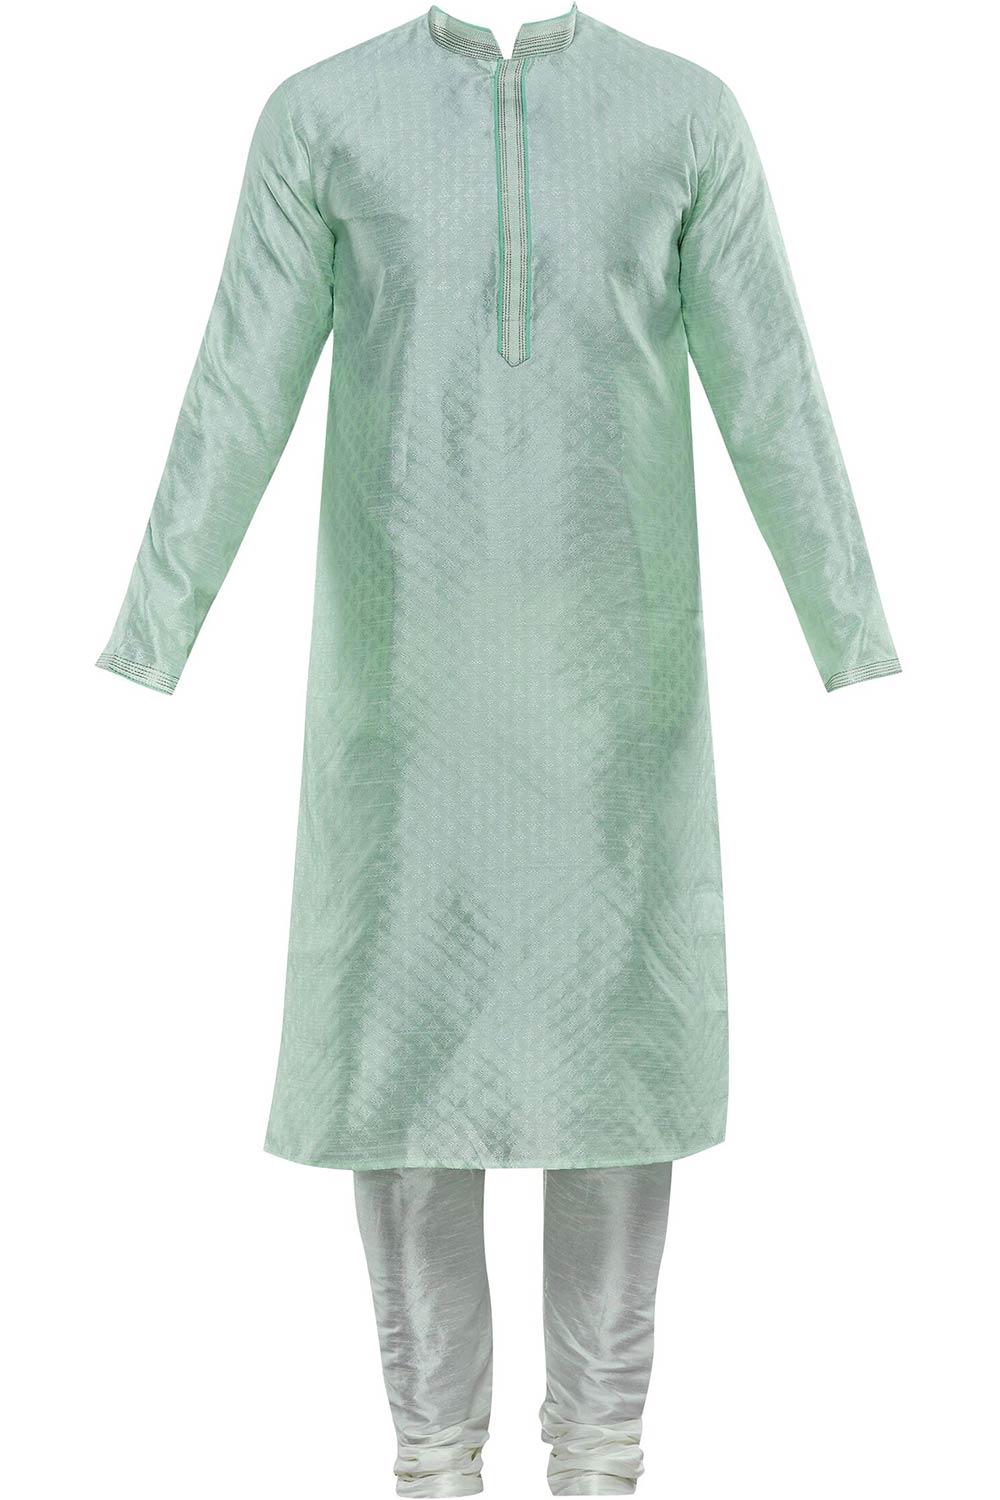 Men's Pista Green Cotton Embroidered Full Sleeve Kurta Churidar